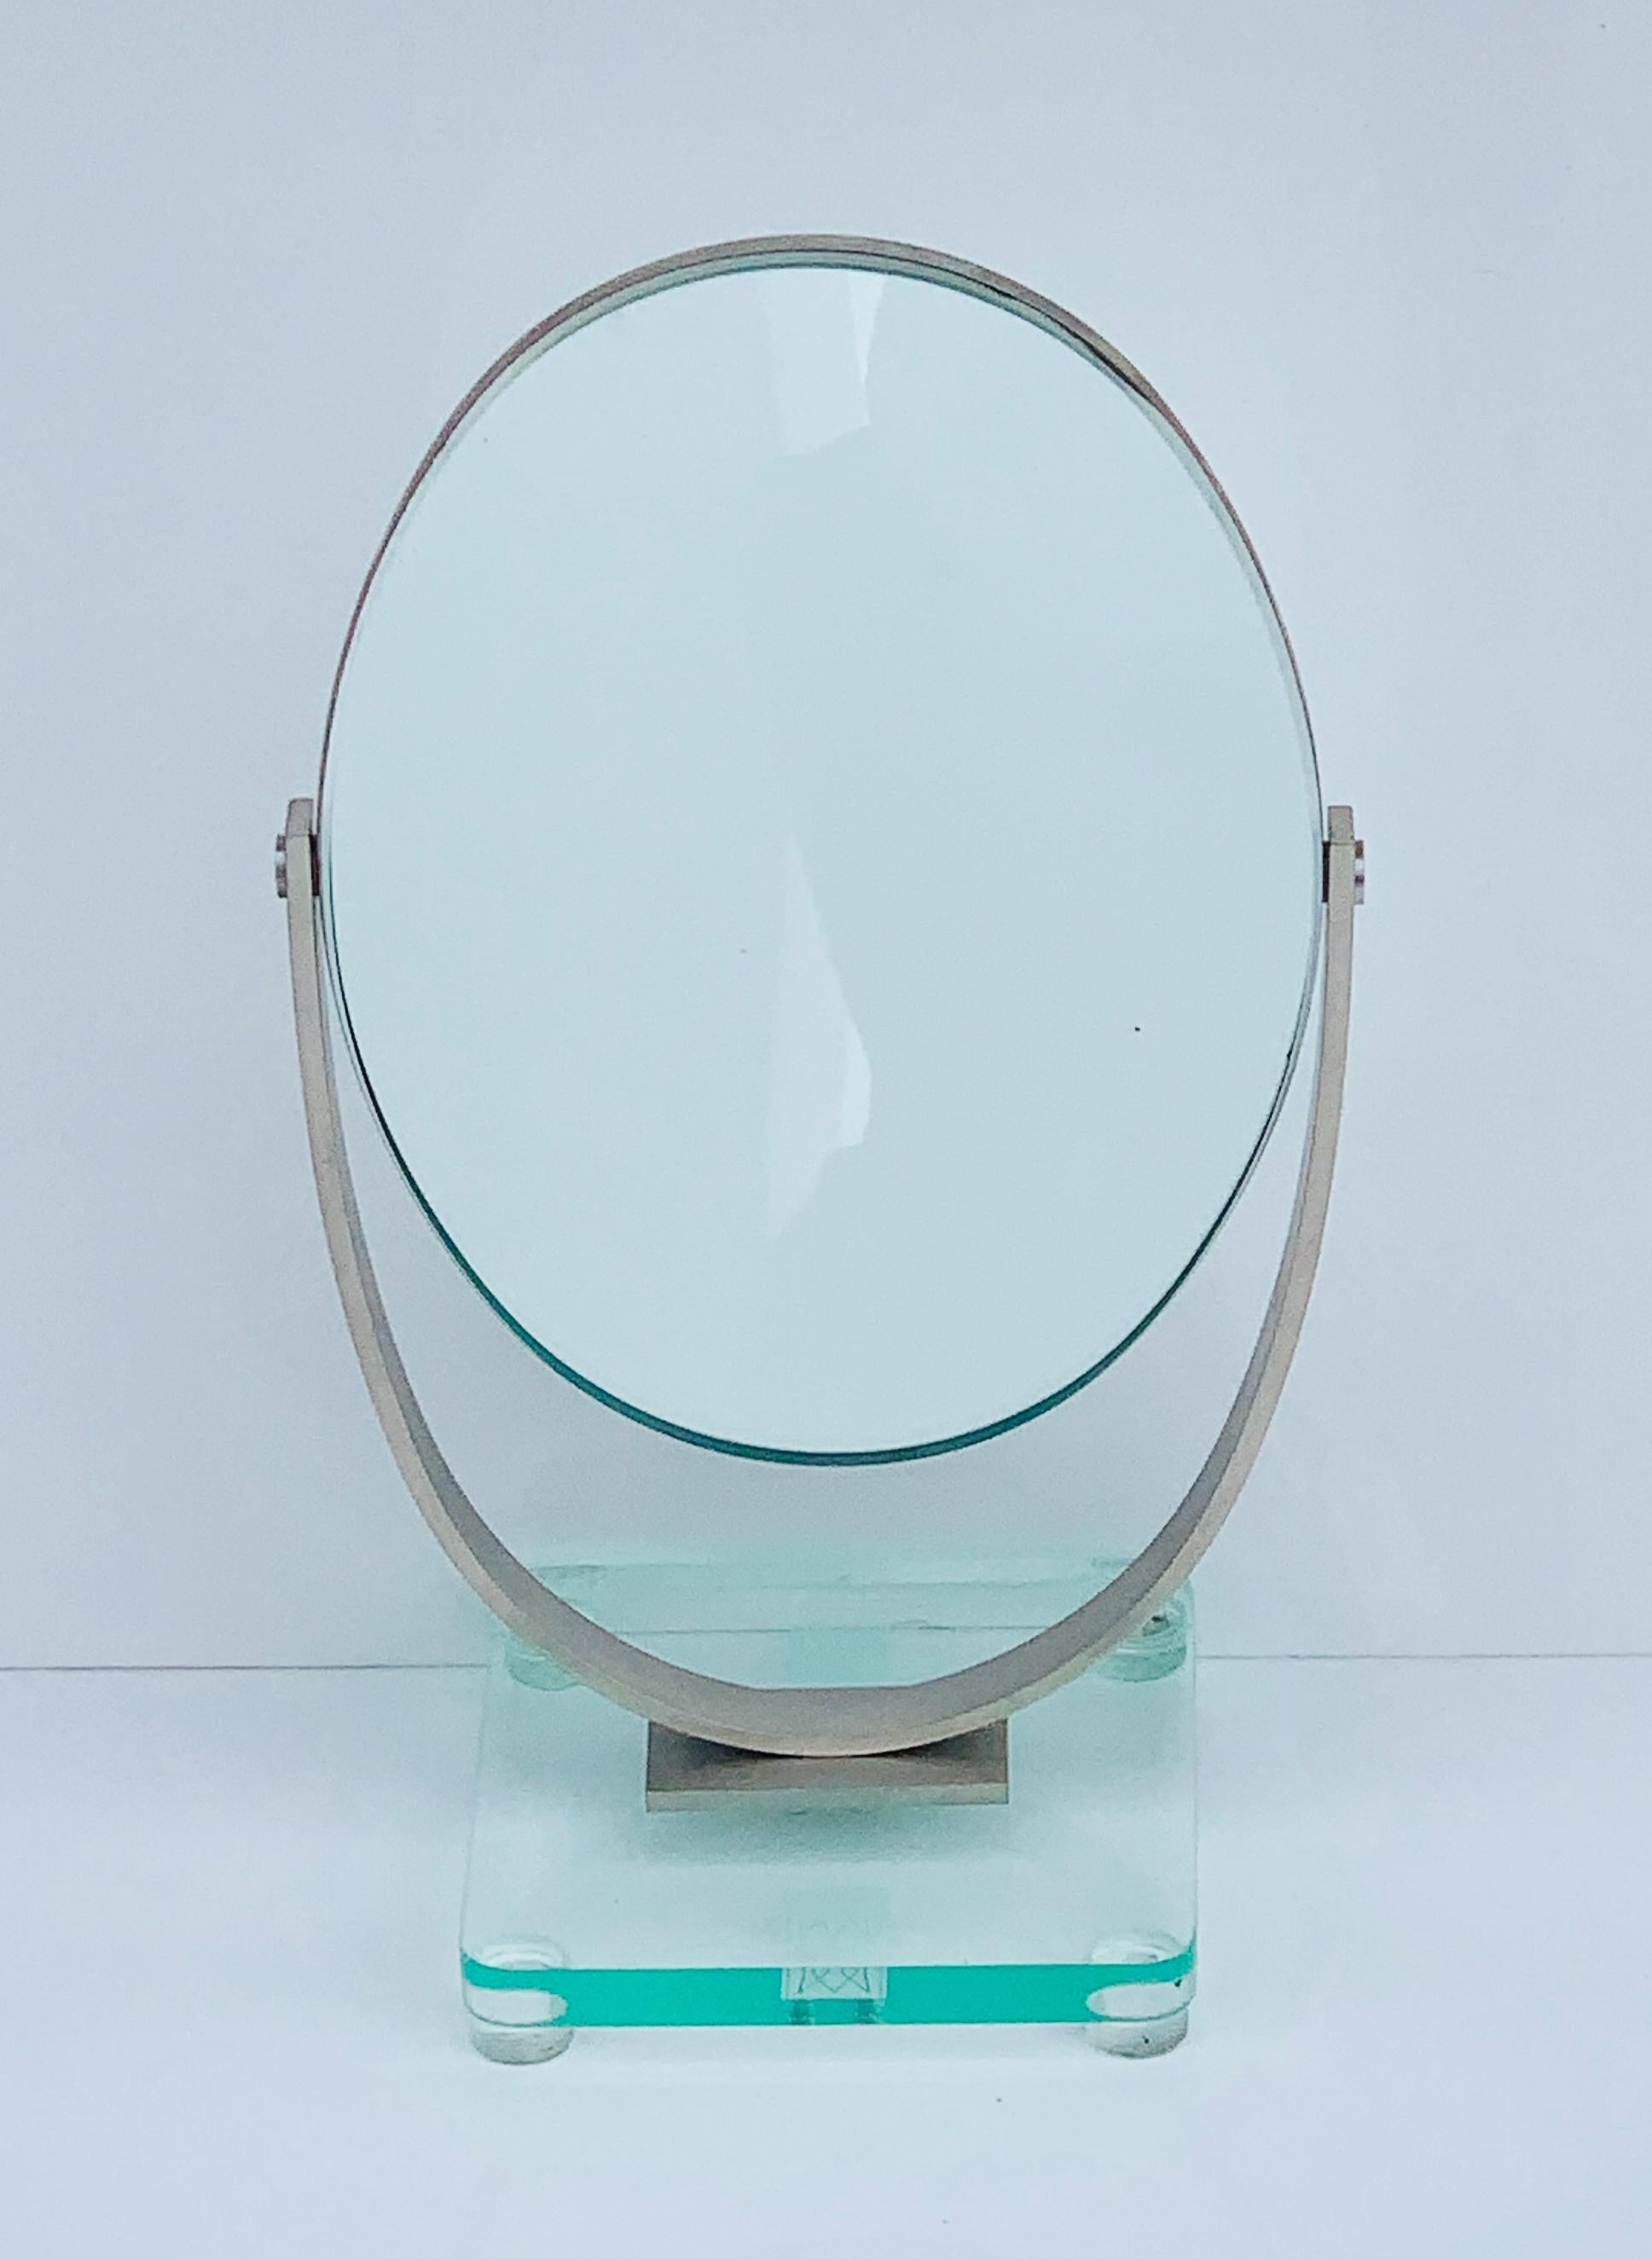 Voici le miroir de courtoisie double face de Charles Eleg Jones, États-Unis, années 1970 - une pièce intemporelle qui allie harmonieusement fonctionnalité et élégance. Ce miroir exquis est le complément idéal d'un meuble de toilette ou d'une